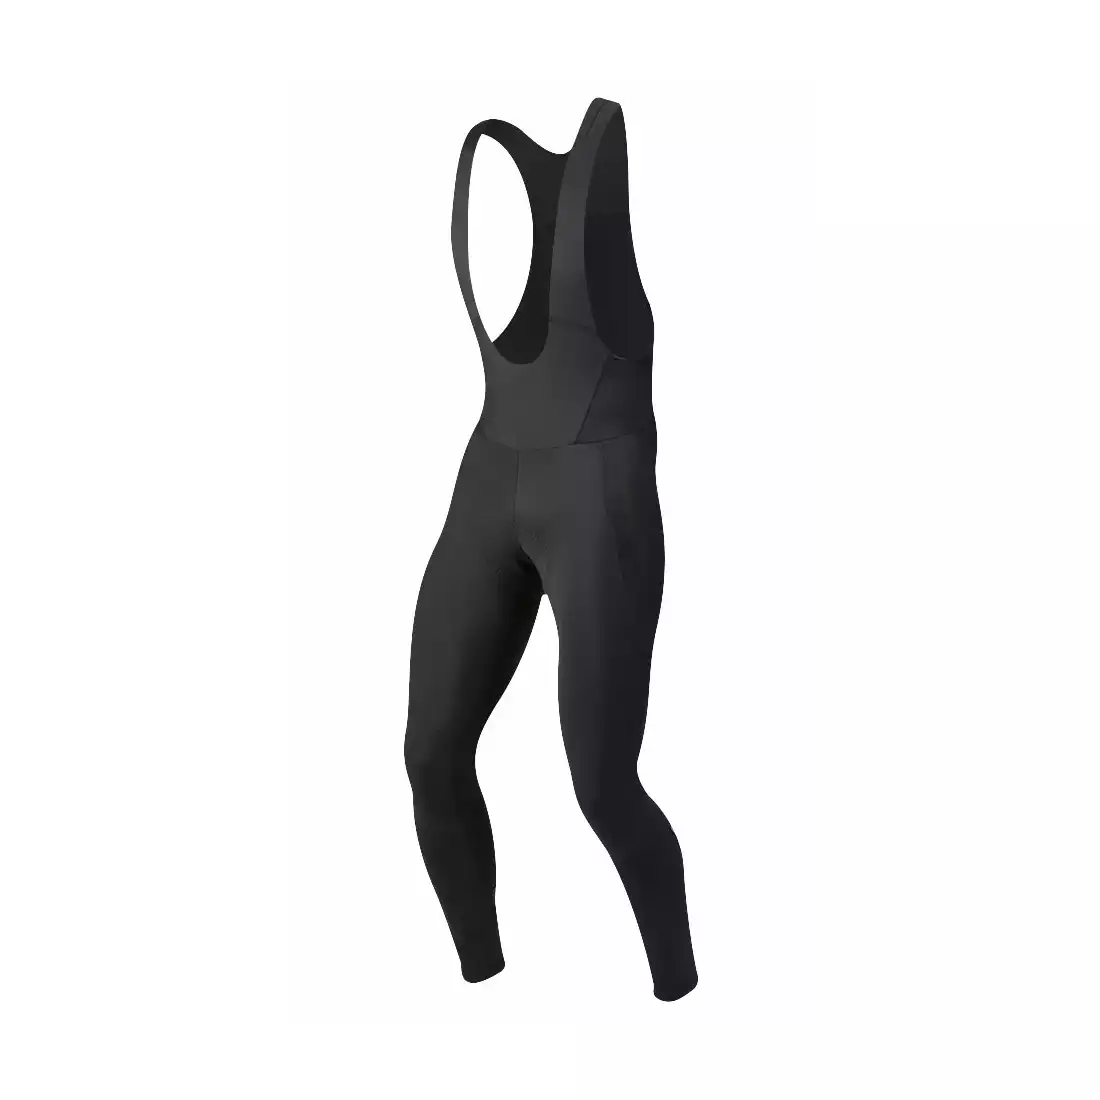 PEARL IZUMI ELITE AMFIB zimowe spodnie rowerowe, czarne, 11111712-021